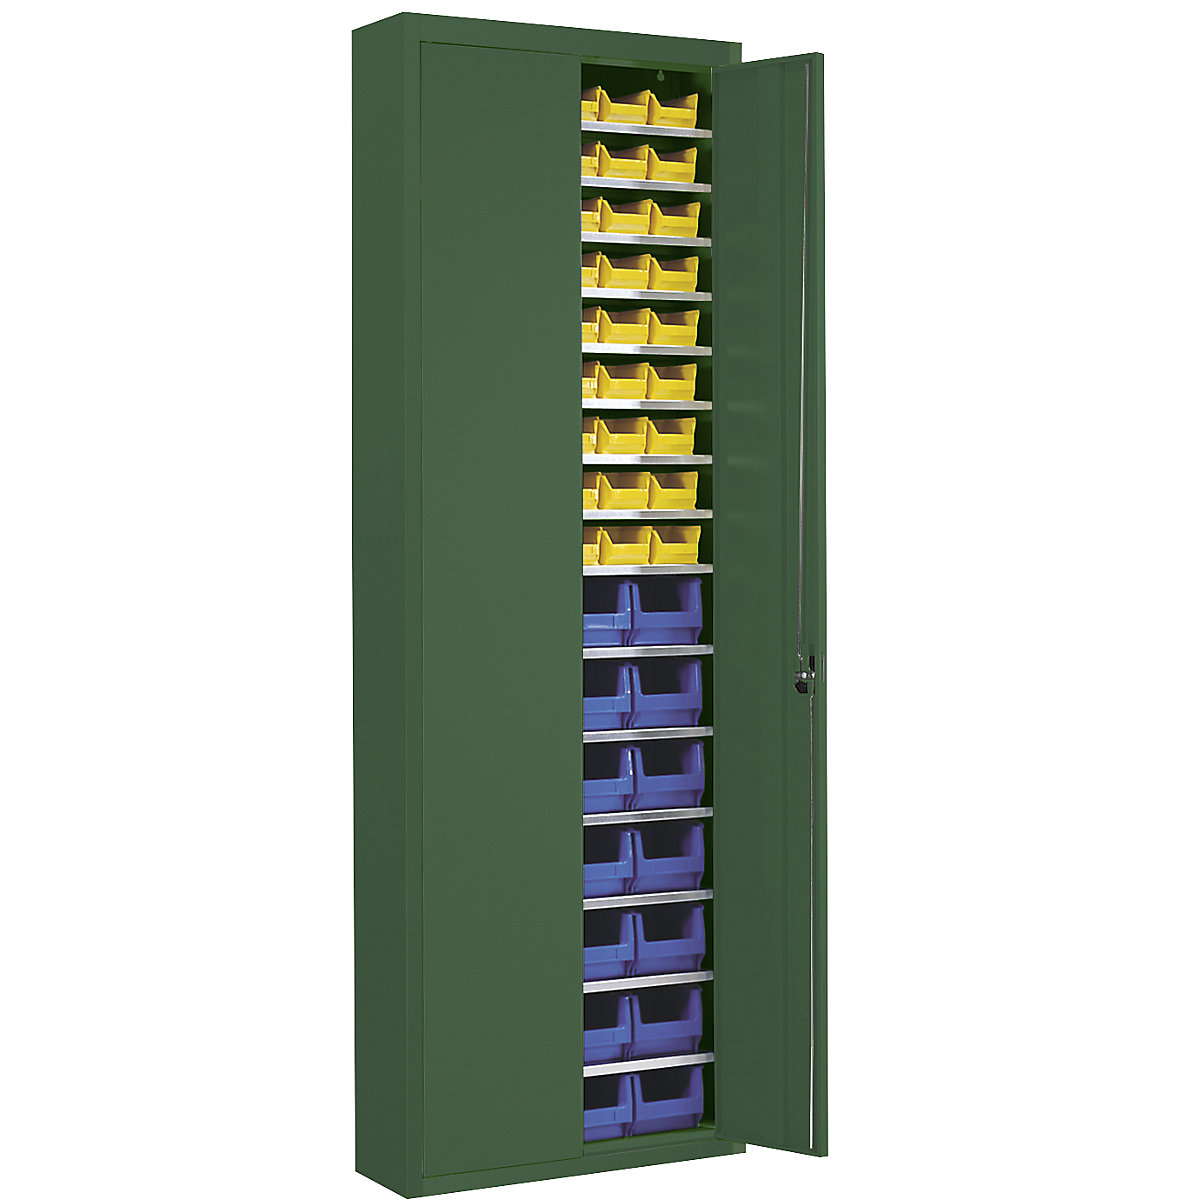 Skladová skříň s přepravkami s viditelným obsahem – mauser, v x š x h 2150 x 680 x 280 mm, jednobarevné, zelená, 82 přepravek-3